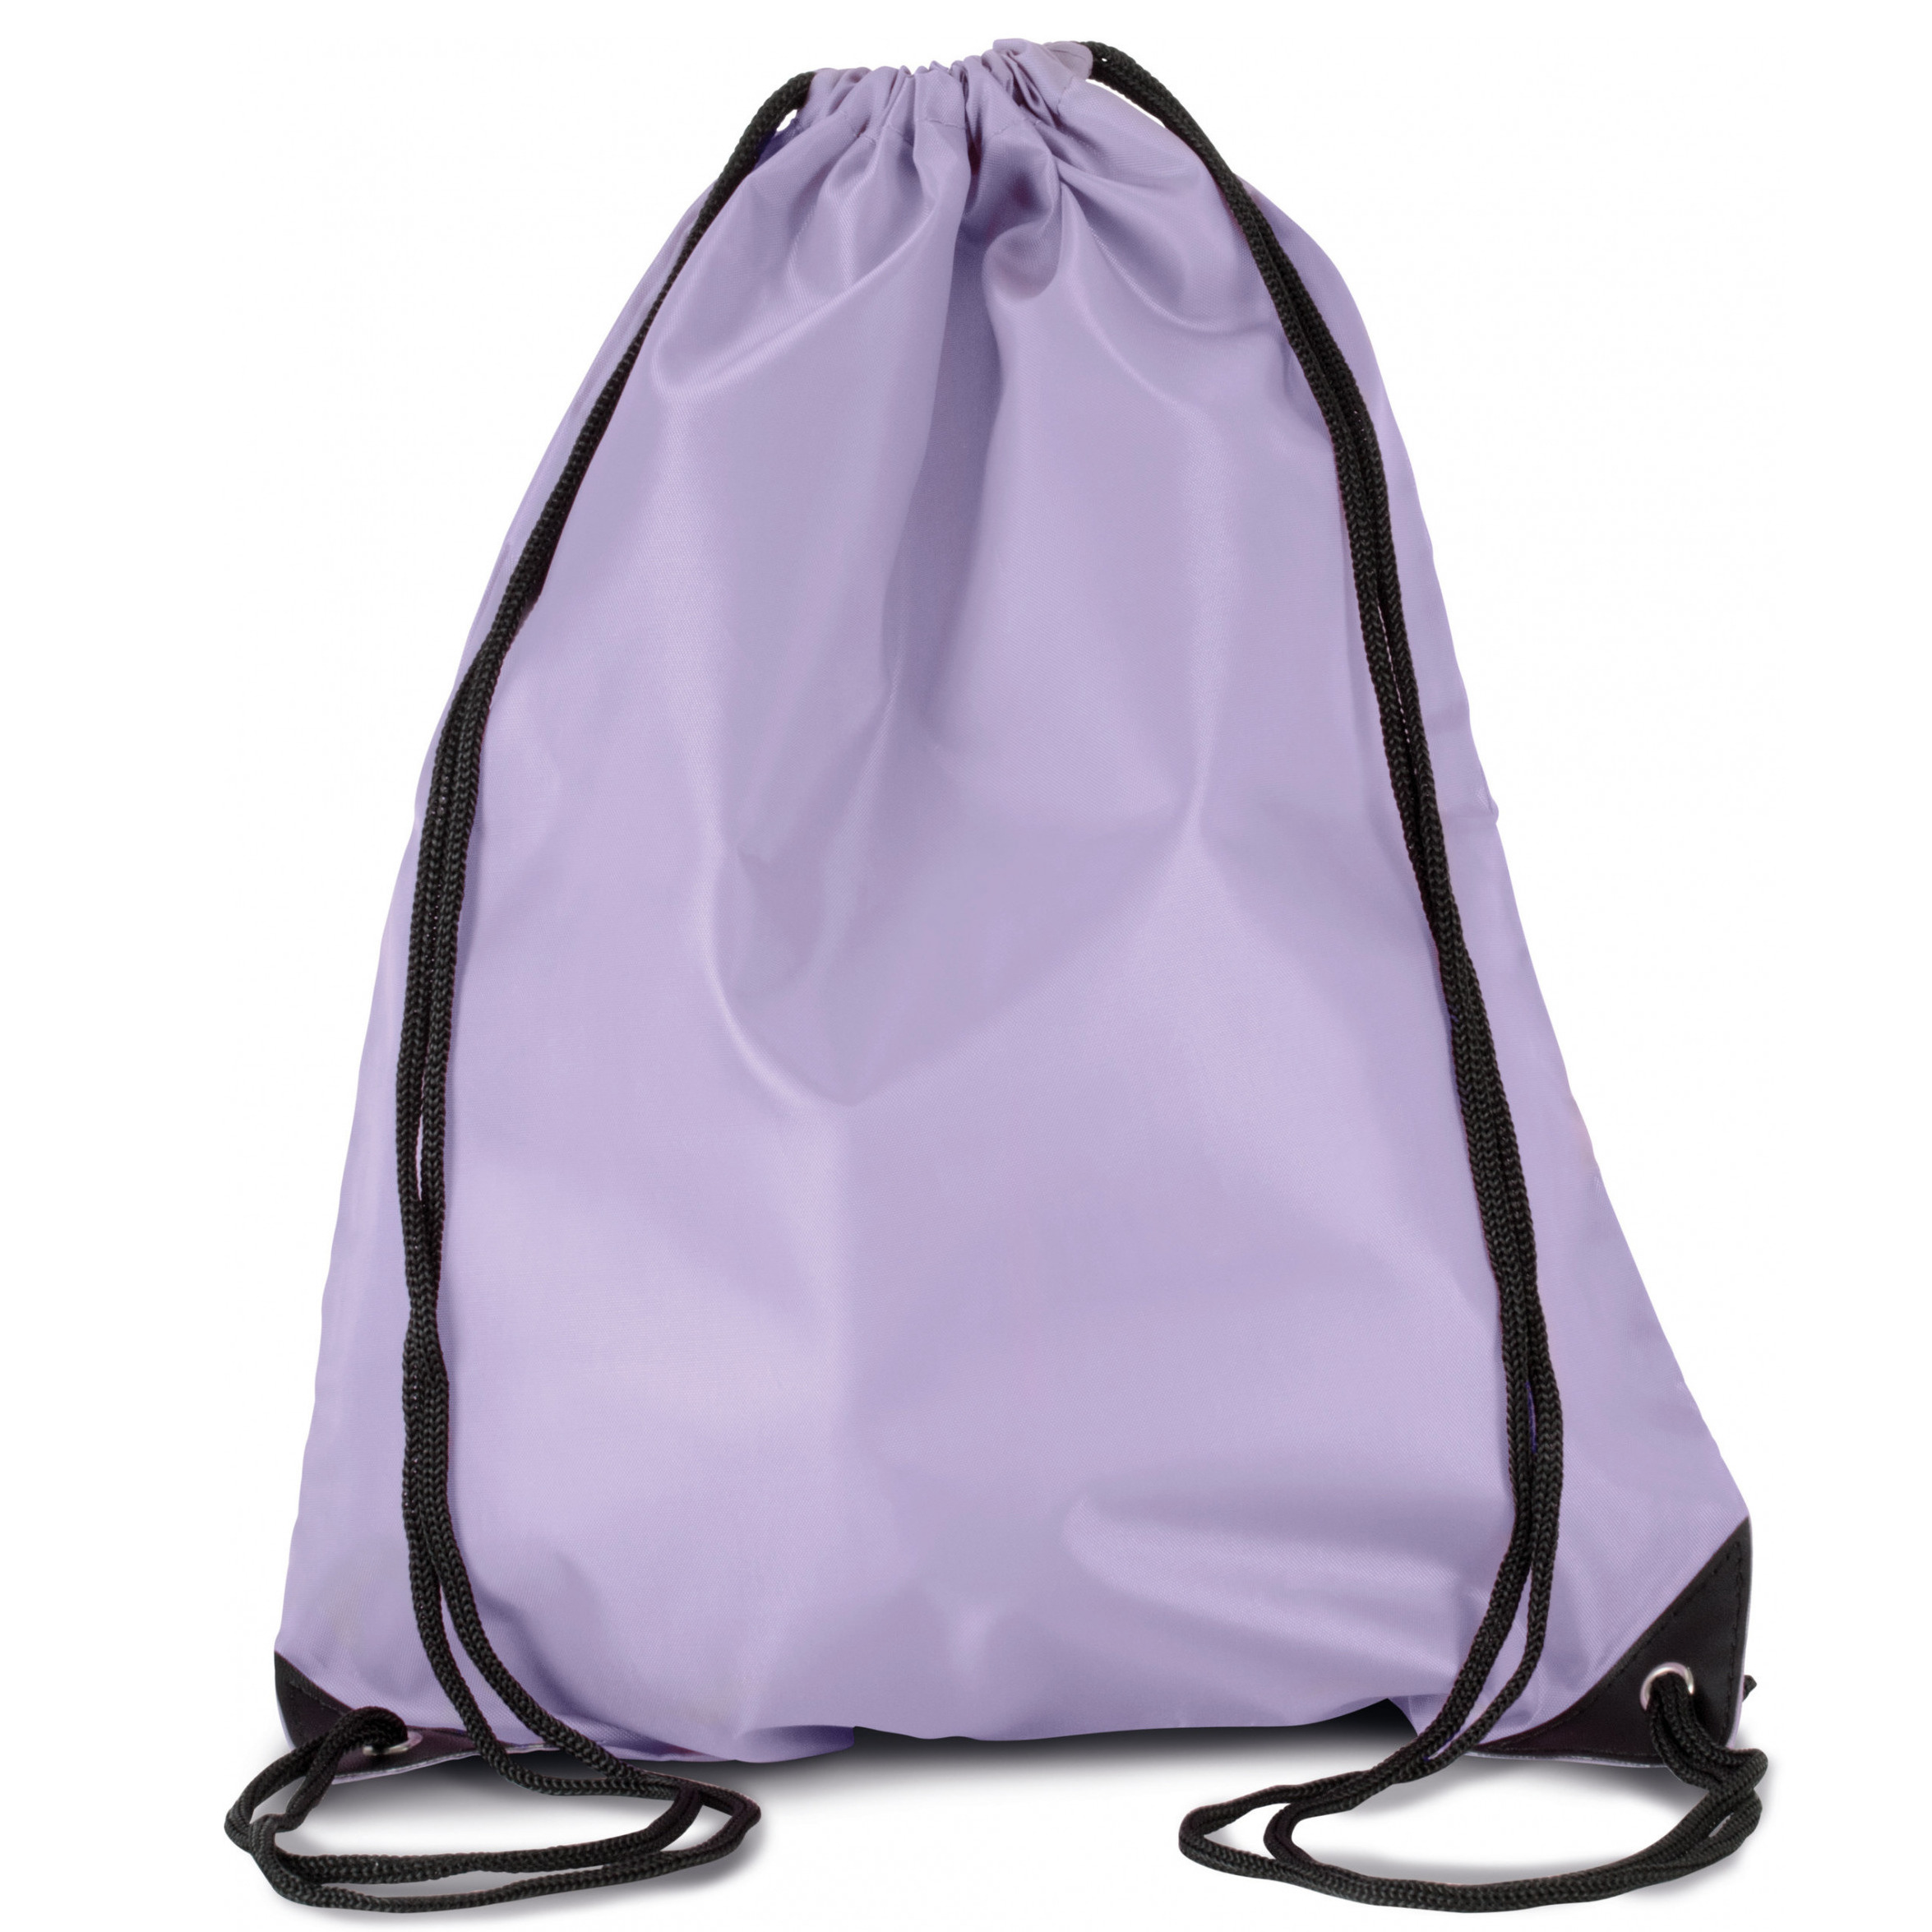 Afbeelding van Sport gymtas/draagtas lila paars met rijgkoord 34 x 44 cm van polyester